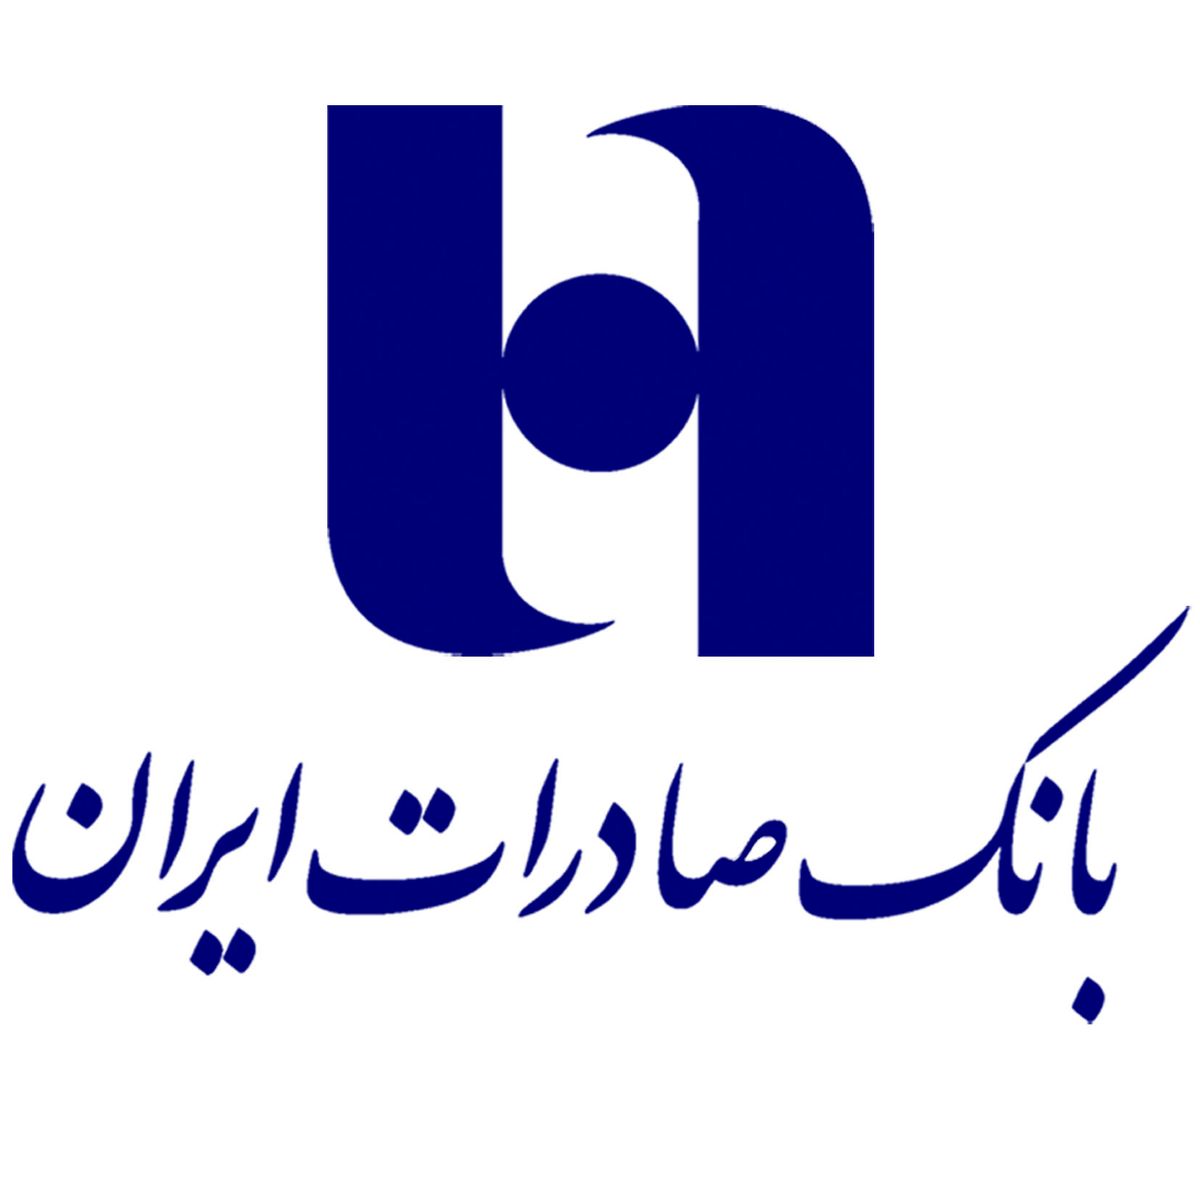 برندگان طرح «پنجره» بانک صادرات ایران ١٢میلیارد ریال جایزه گرفتند